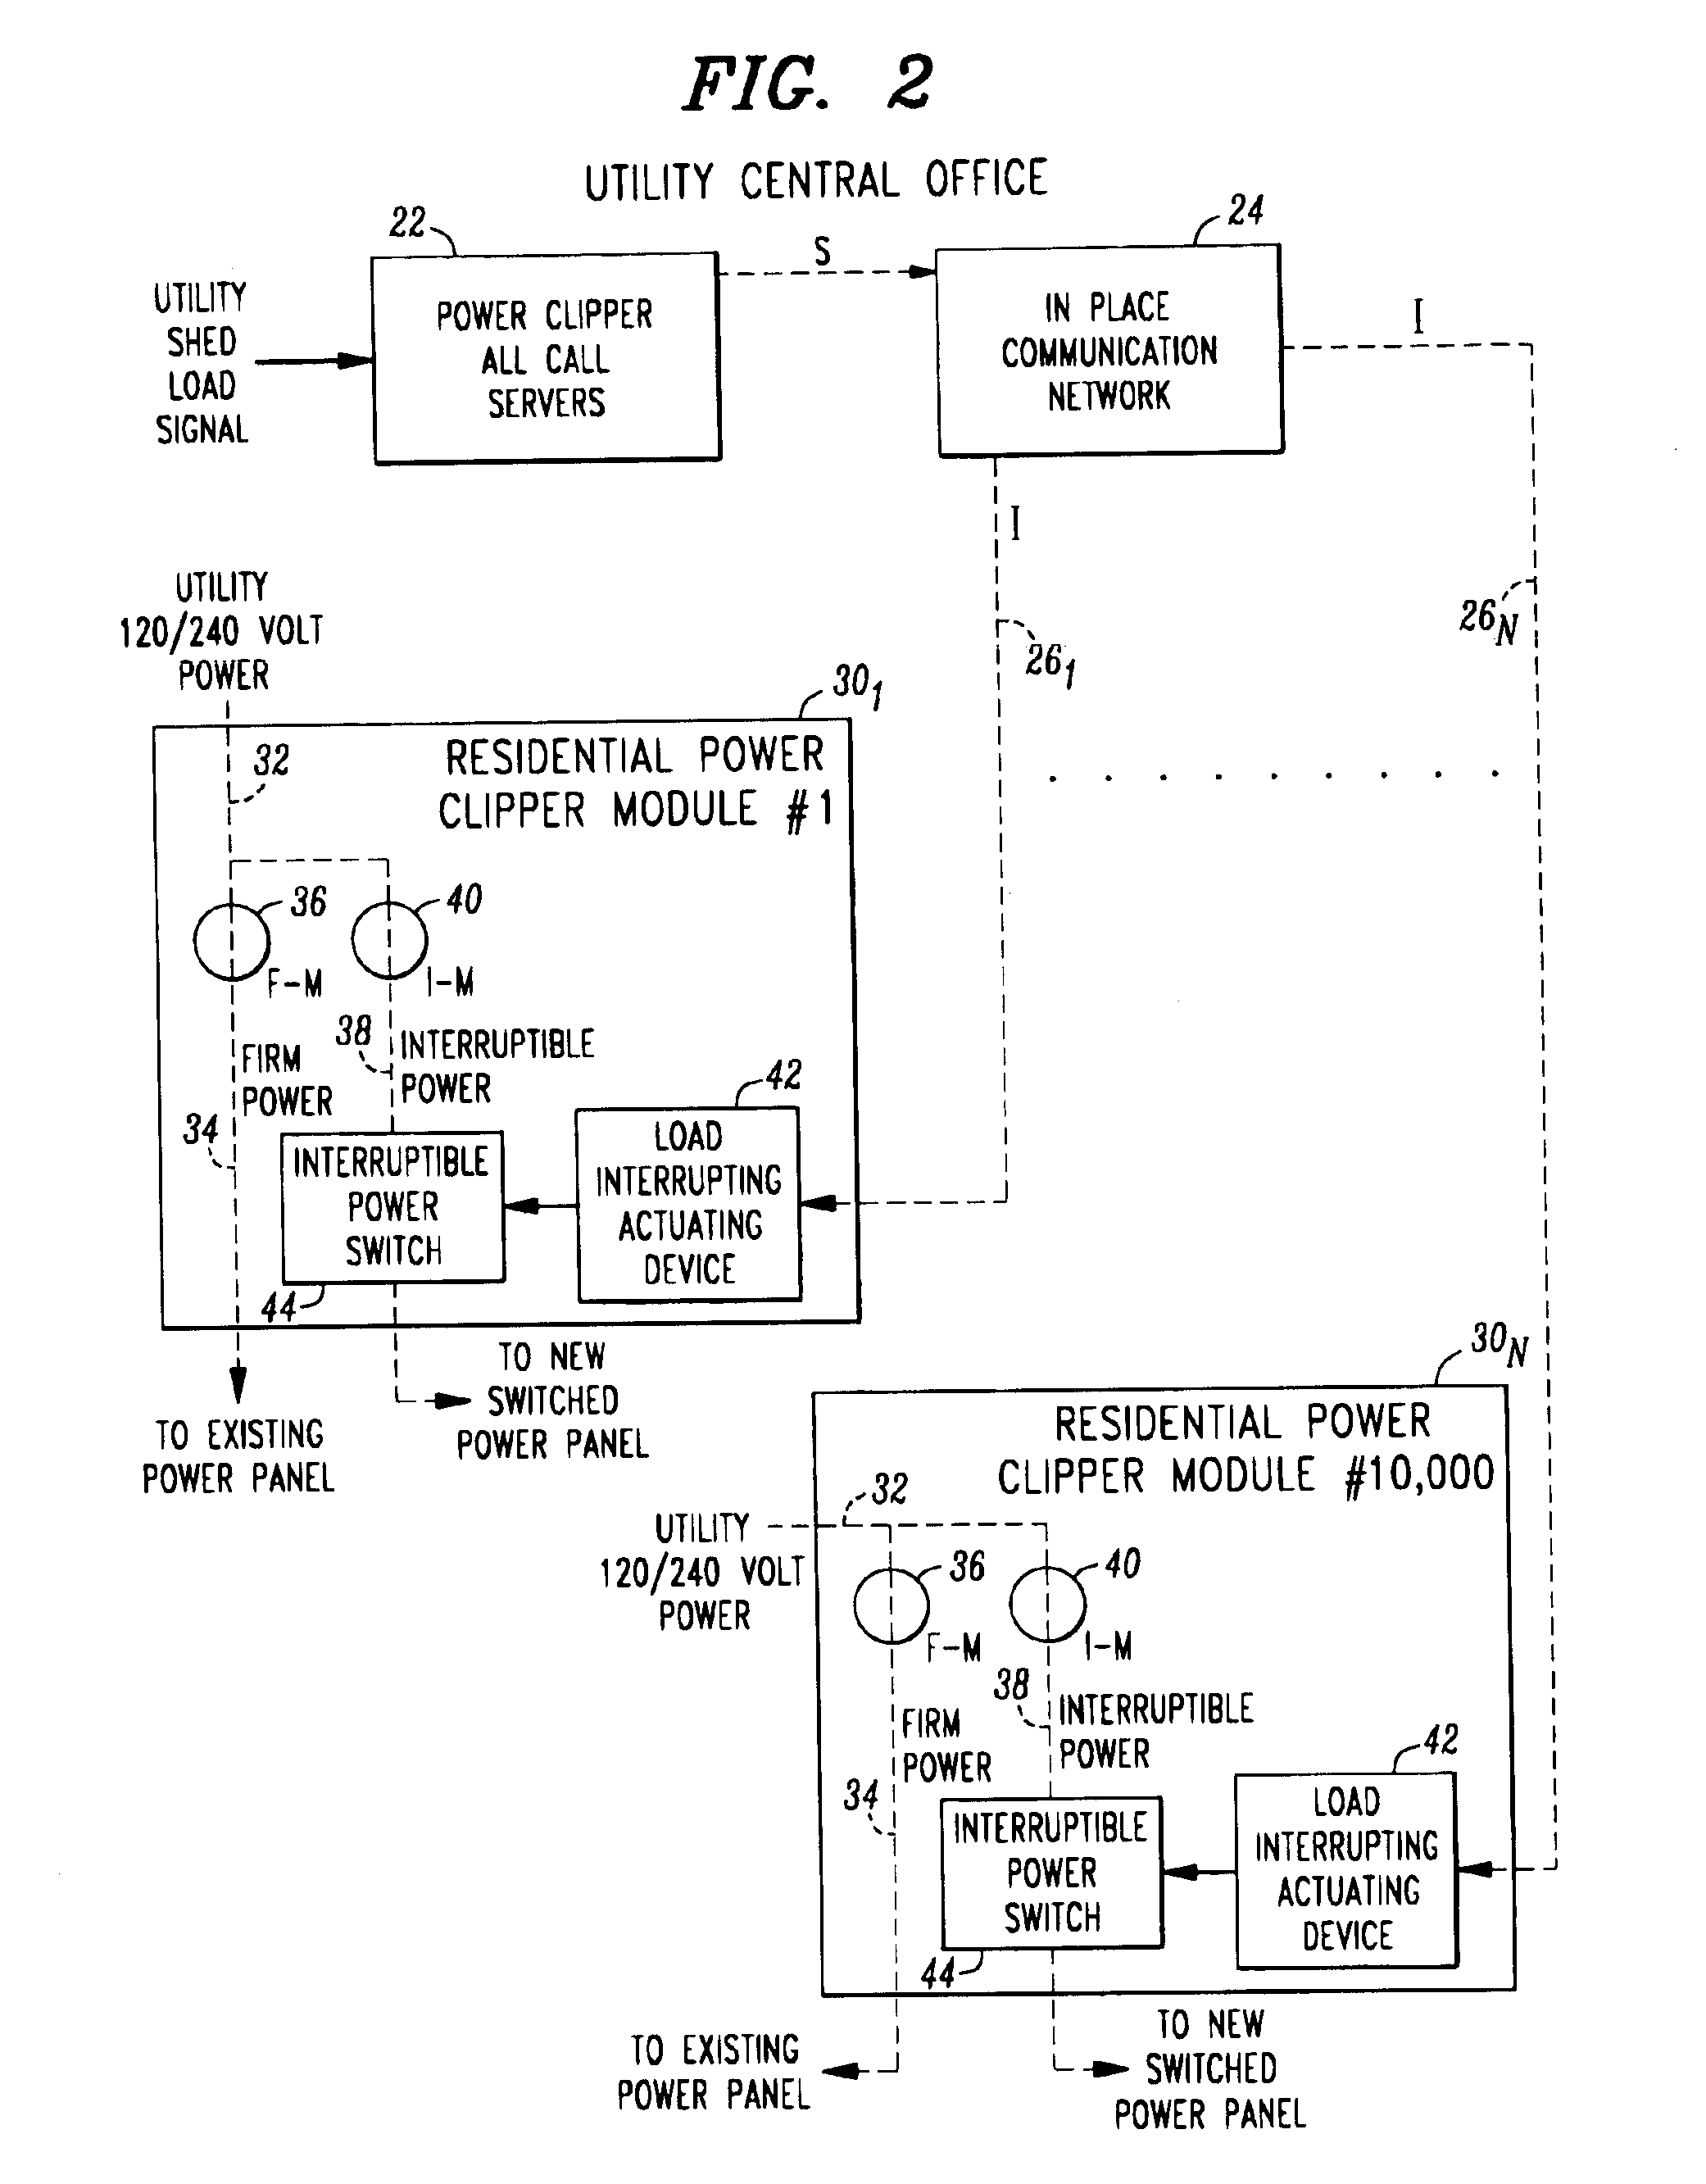 Interruptible power supply module